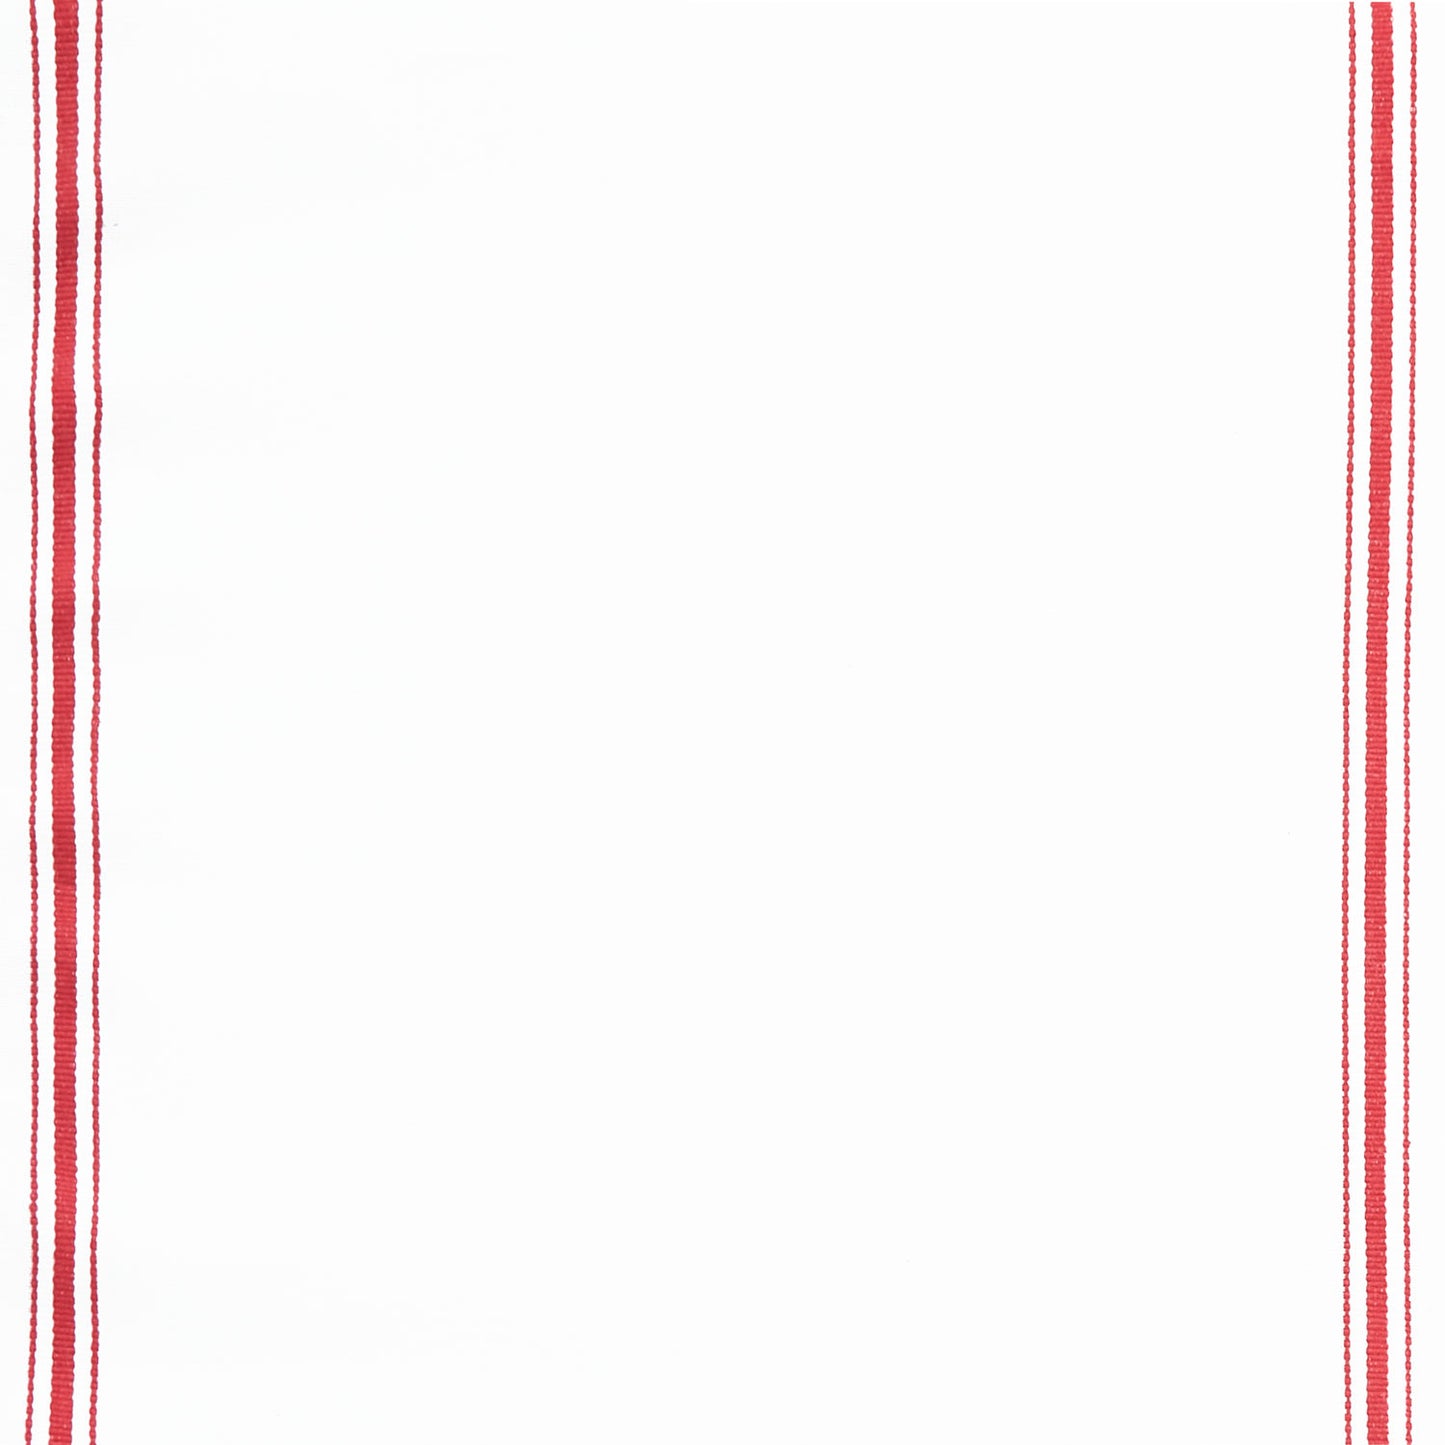 Toweling Basics - Skinny Stripe White Red Yardage Primary Image